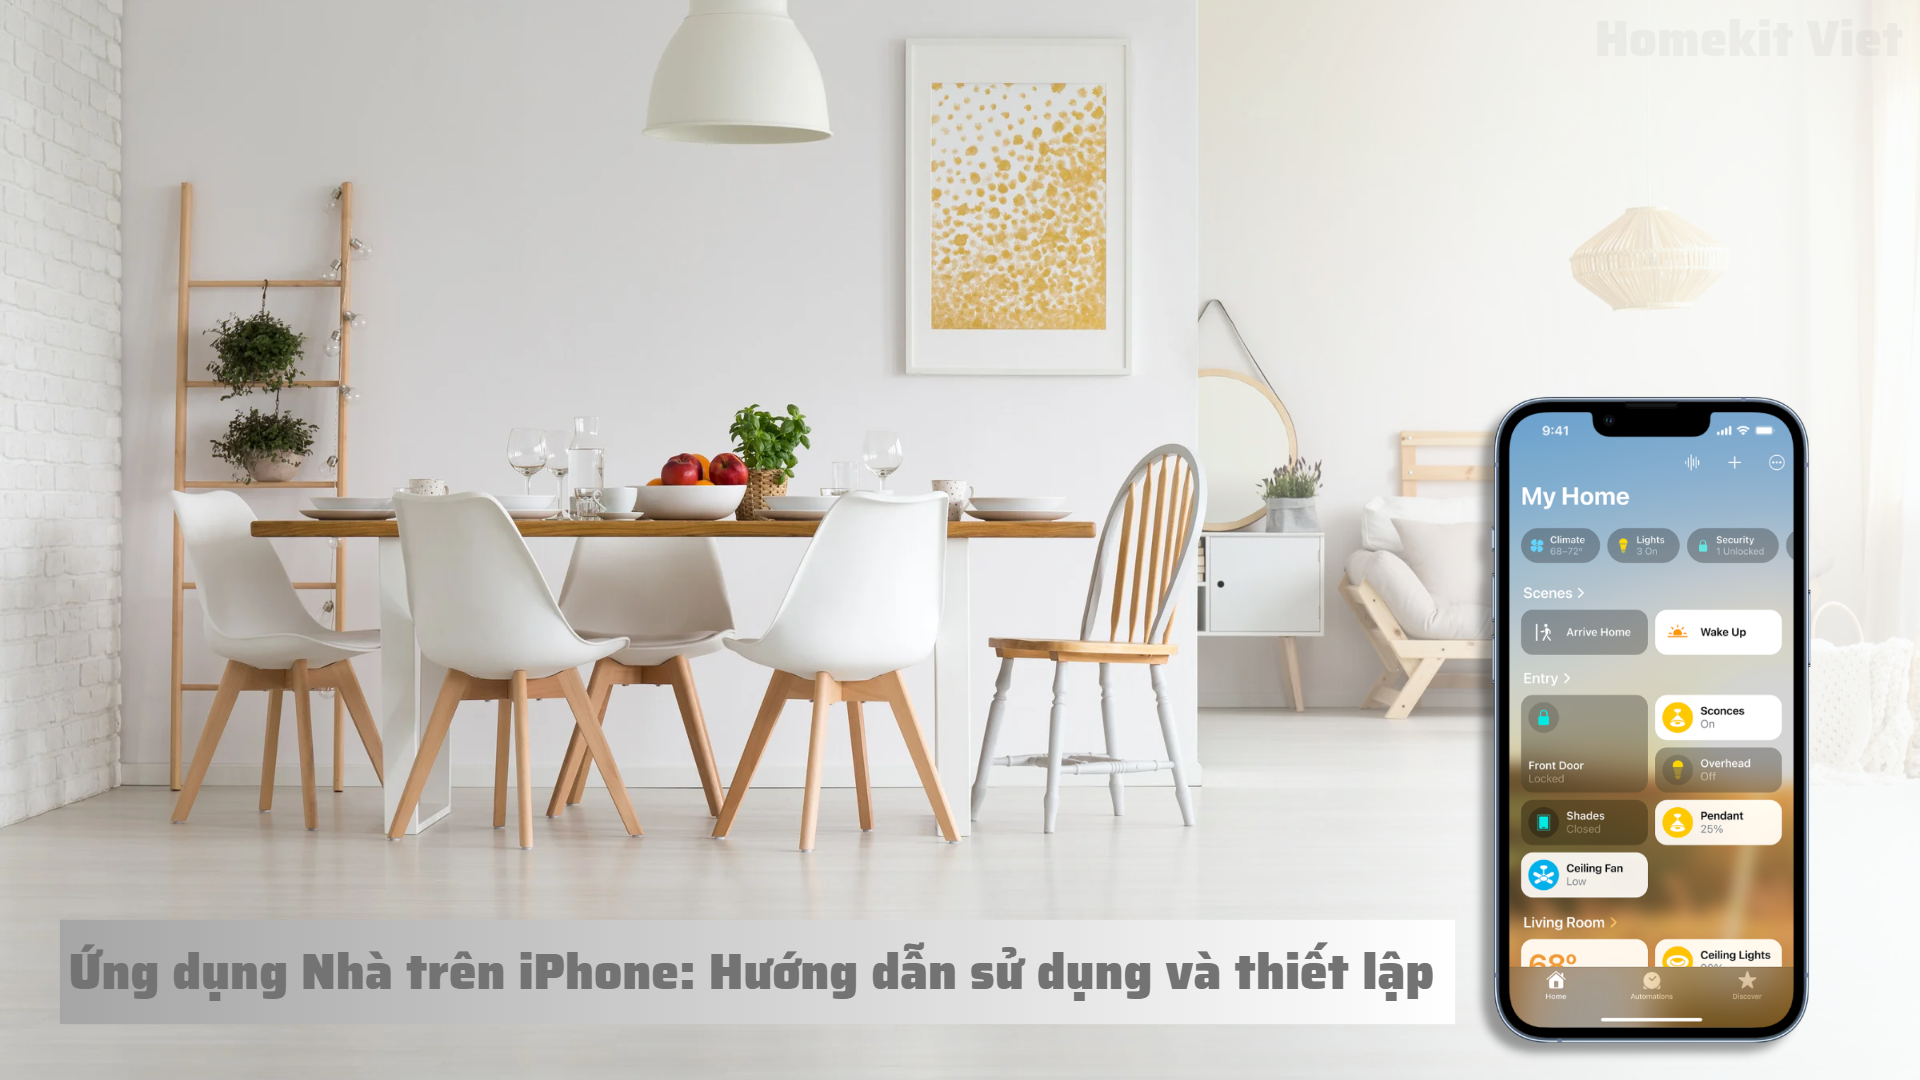 Hướng dẫn sử dụng và thiết lập Ứng dụng Nhà trên iPhone - Homekit Viet